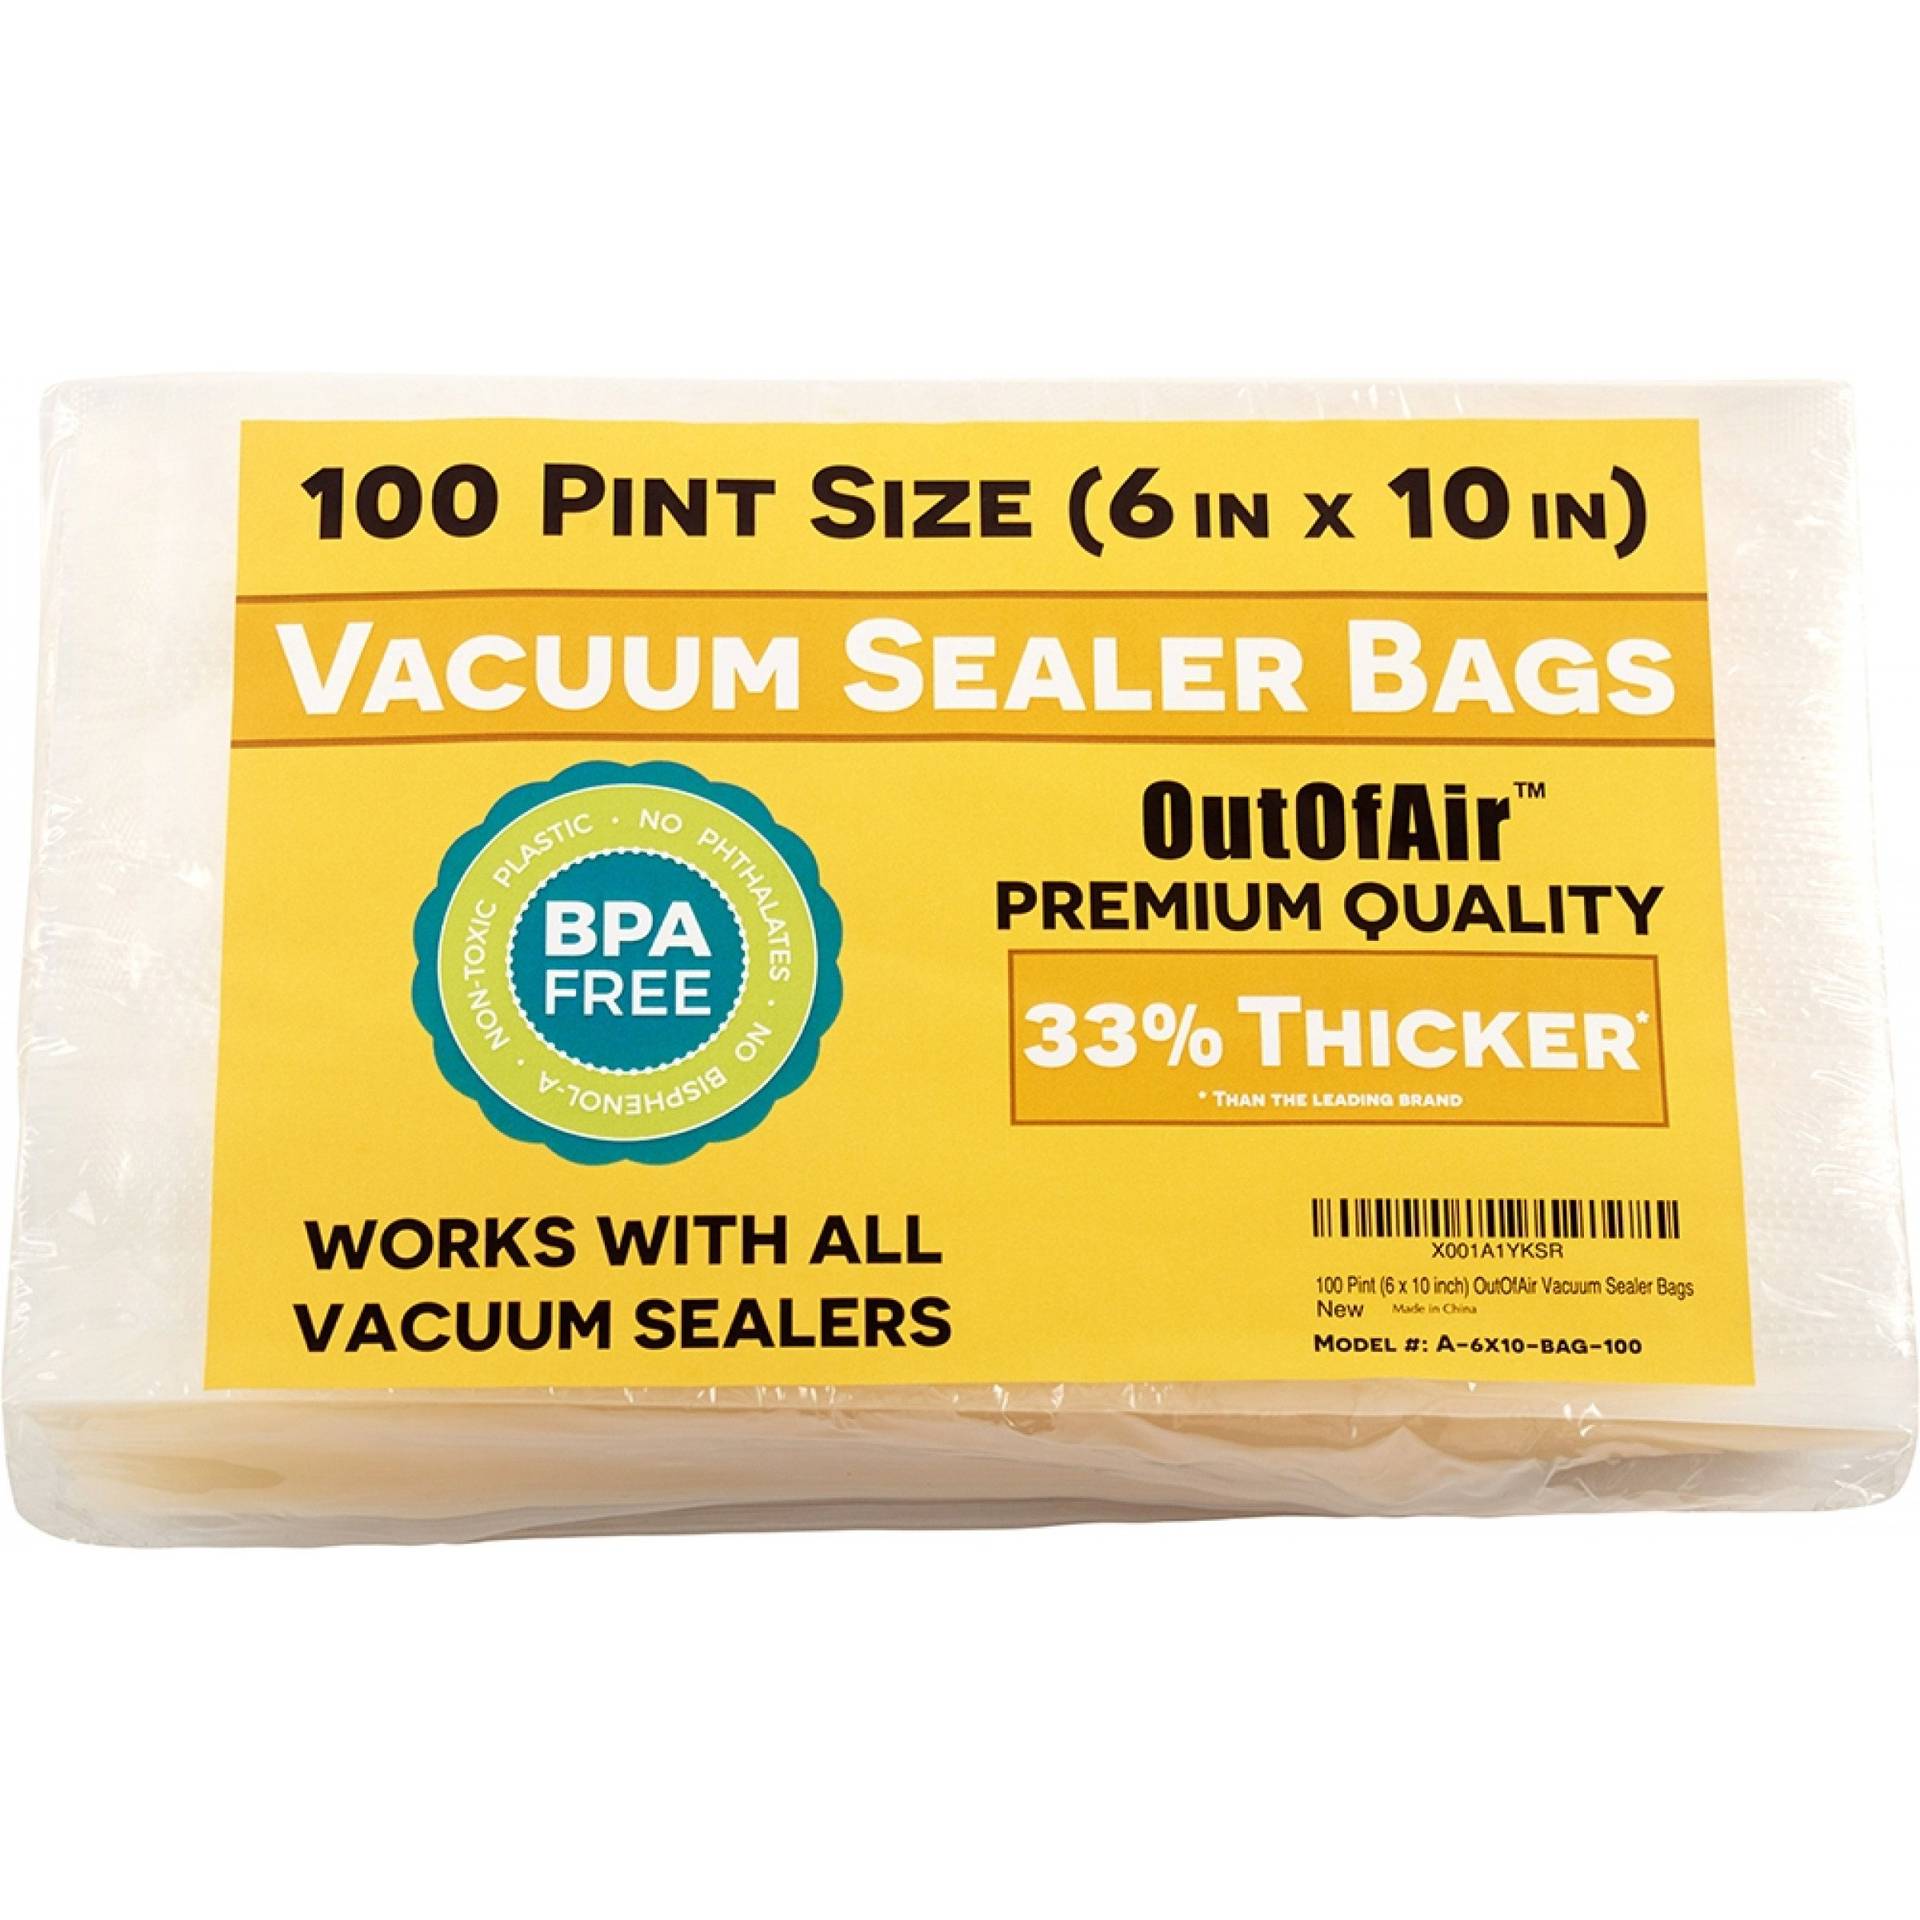 4 mil. Quart size Zip lock storage bags (100 per bag)